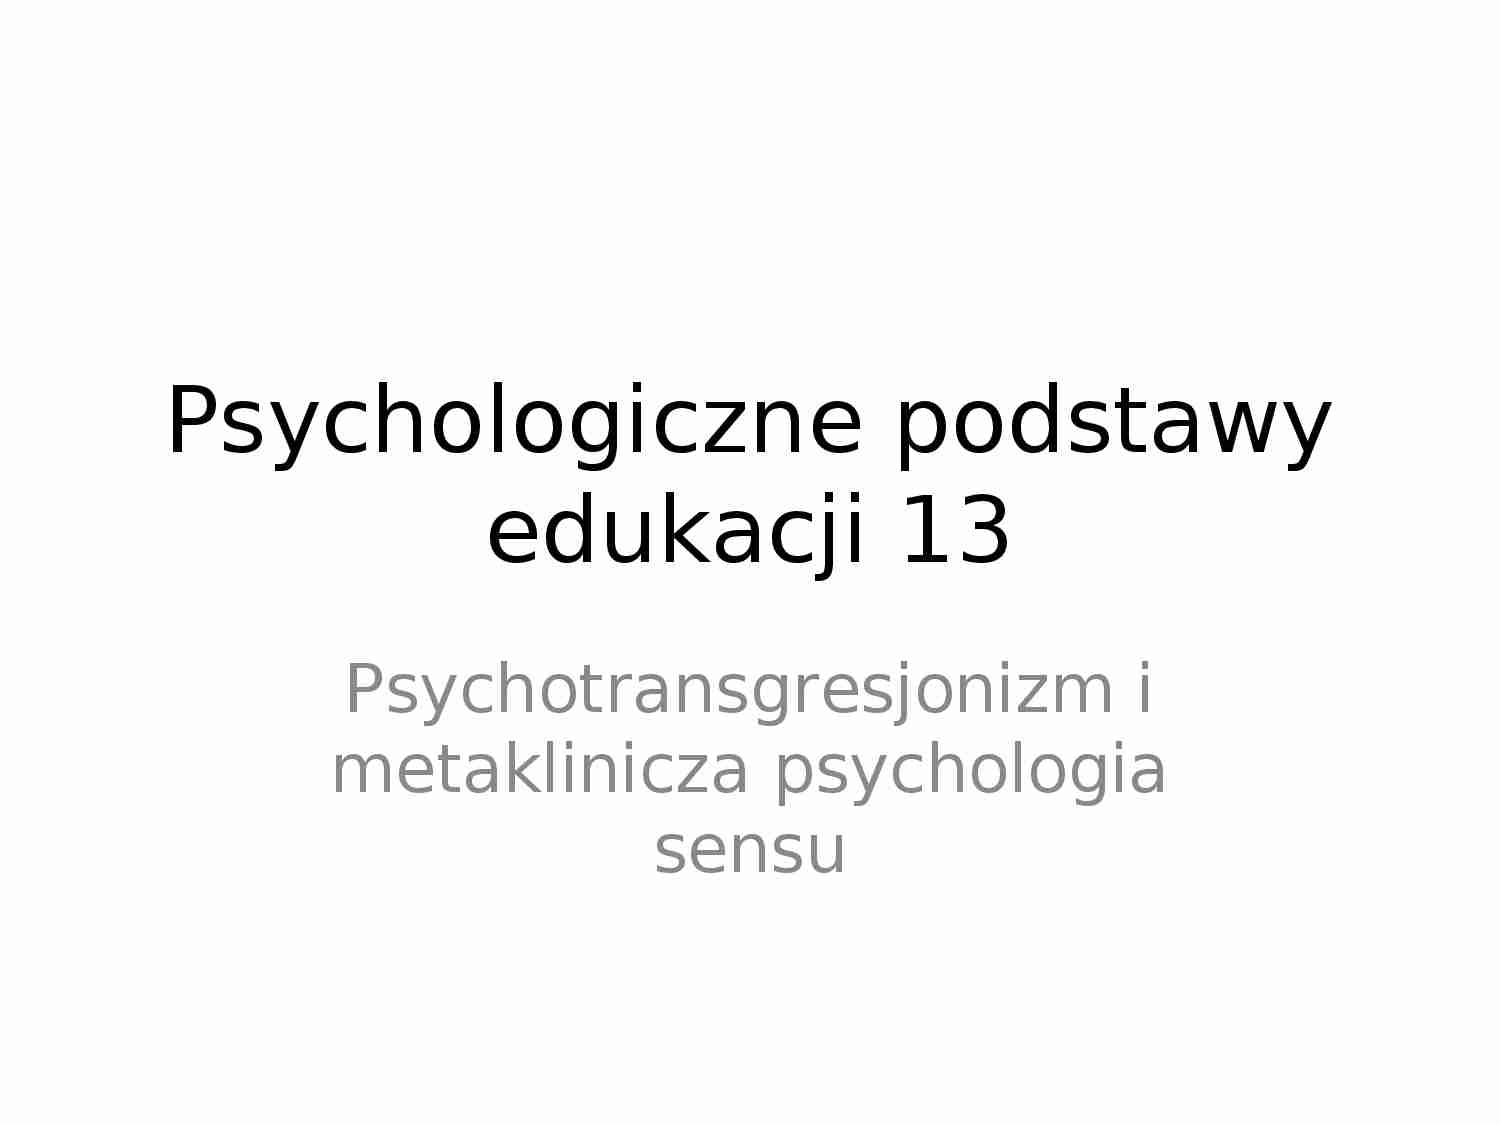 Psychotransgresjonizm i metaklinicza psychologia sensu - prezentacja. - strona 1